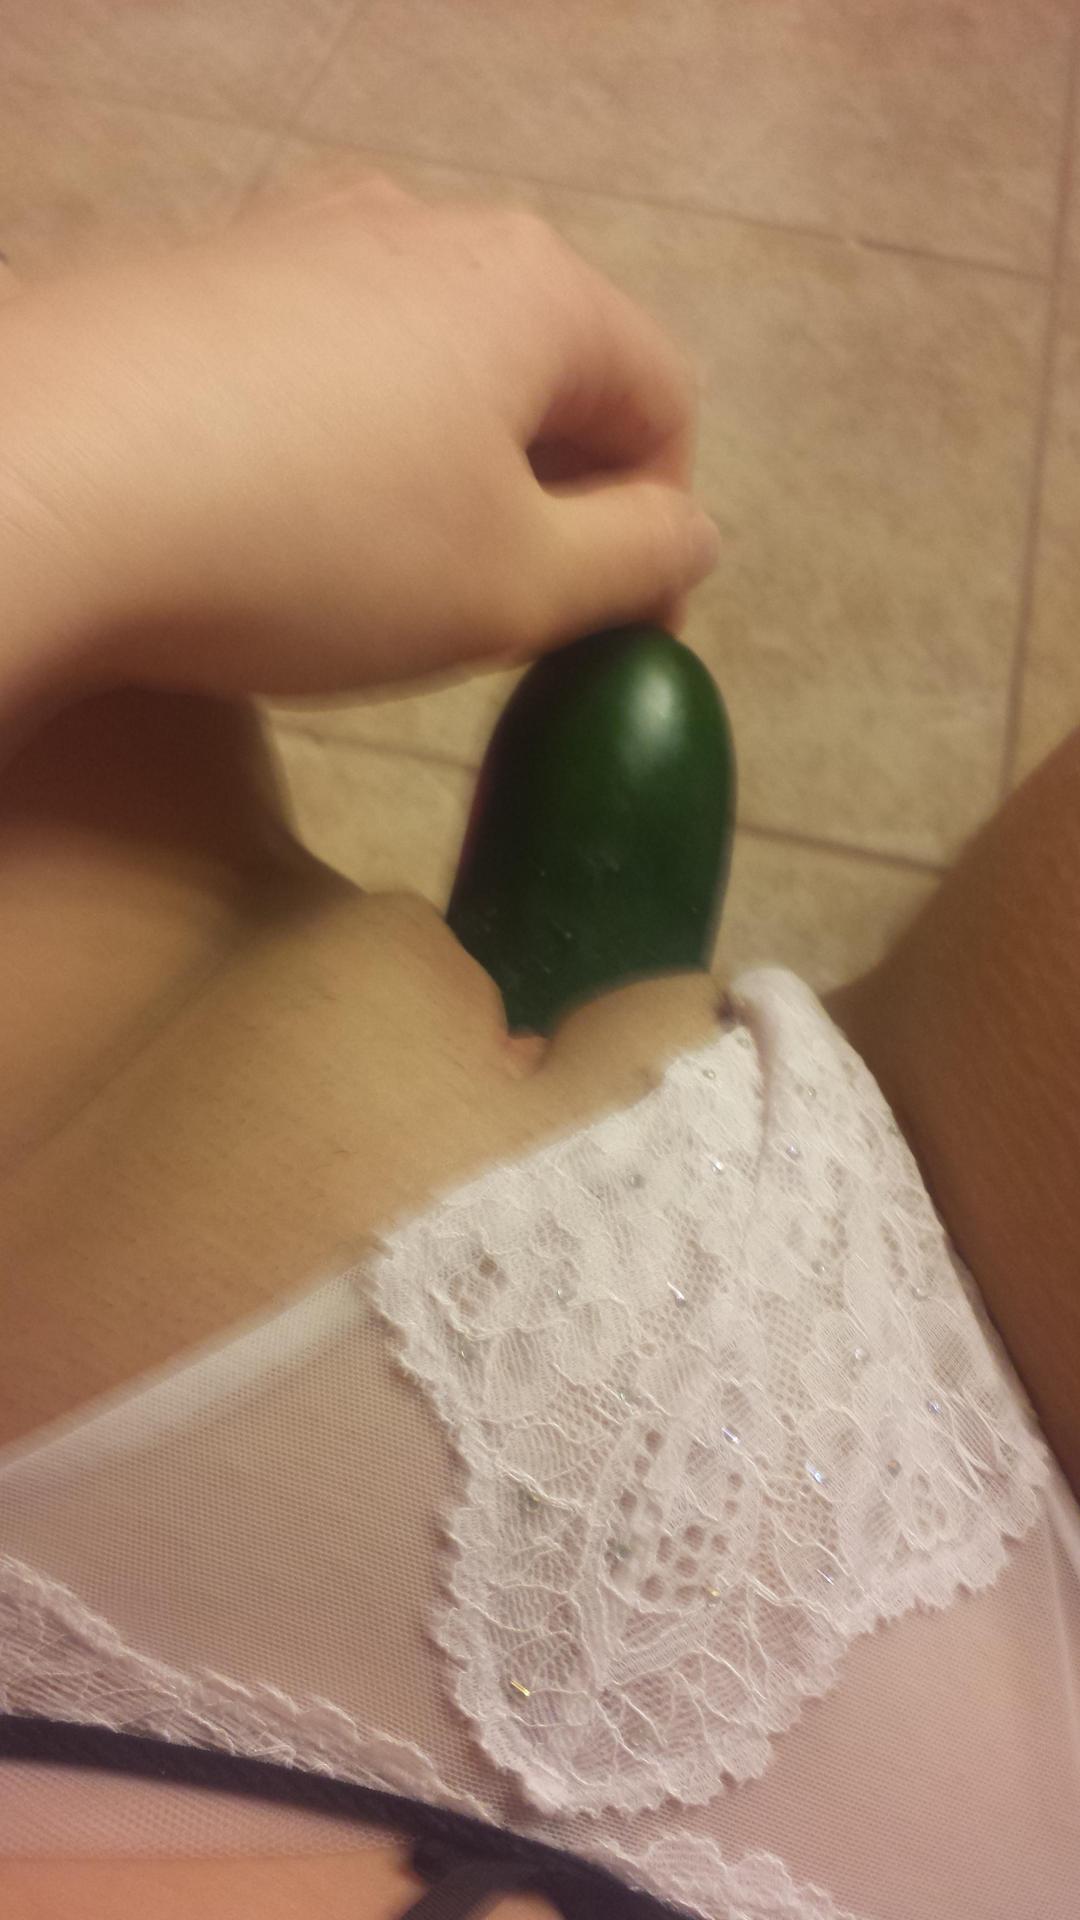 Lesbian cucumber fun